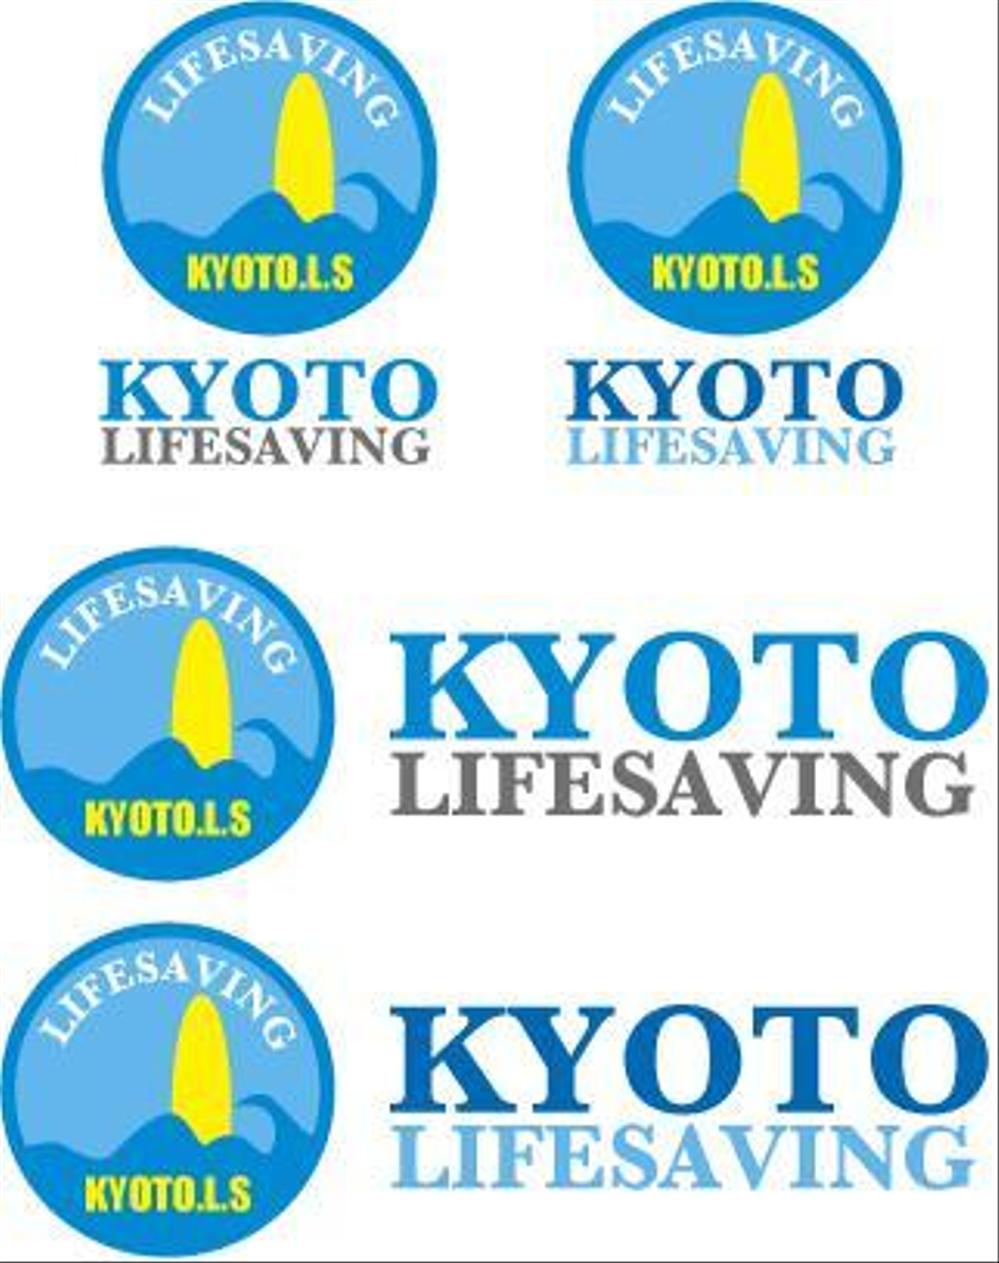 kyotolifesaving.jpg